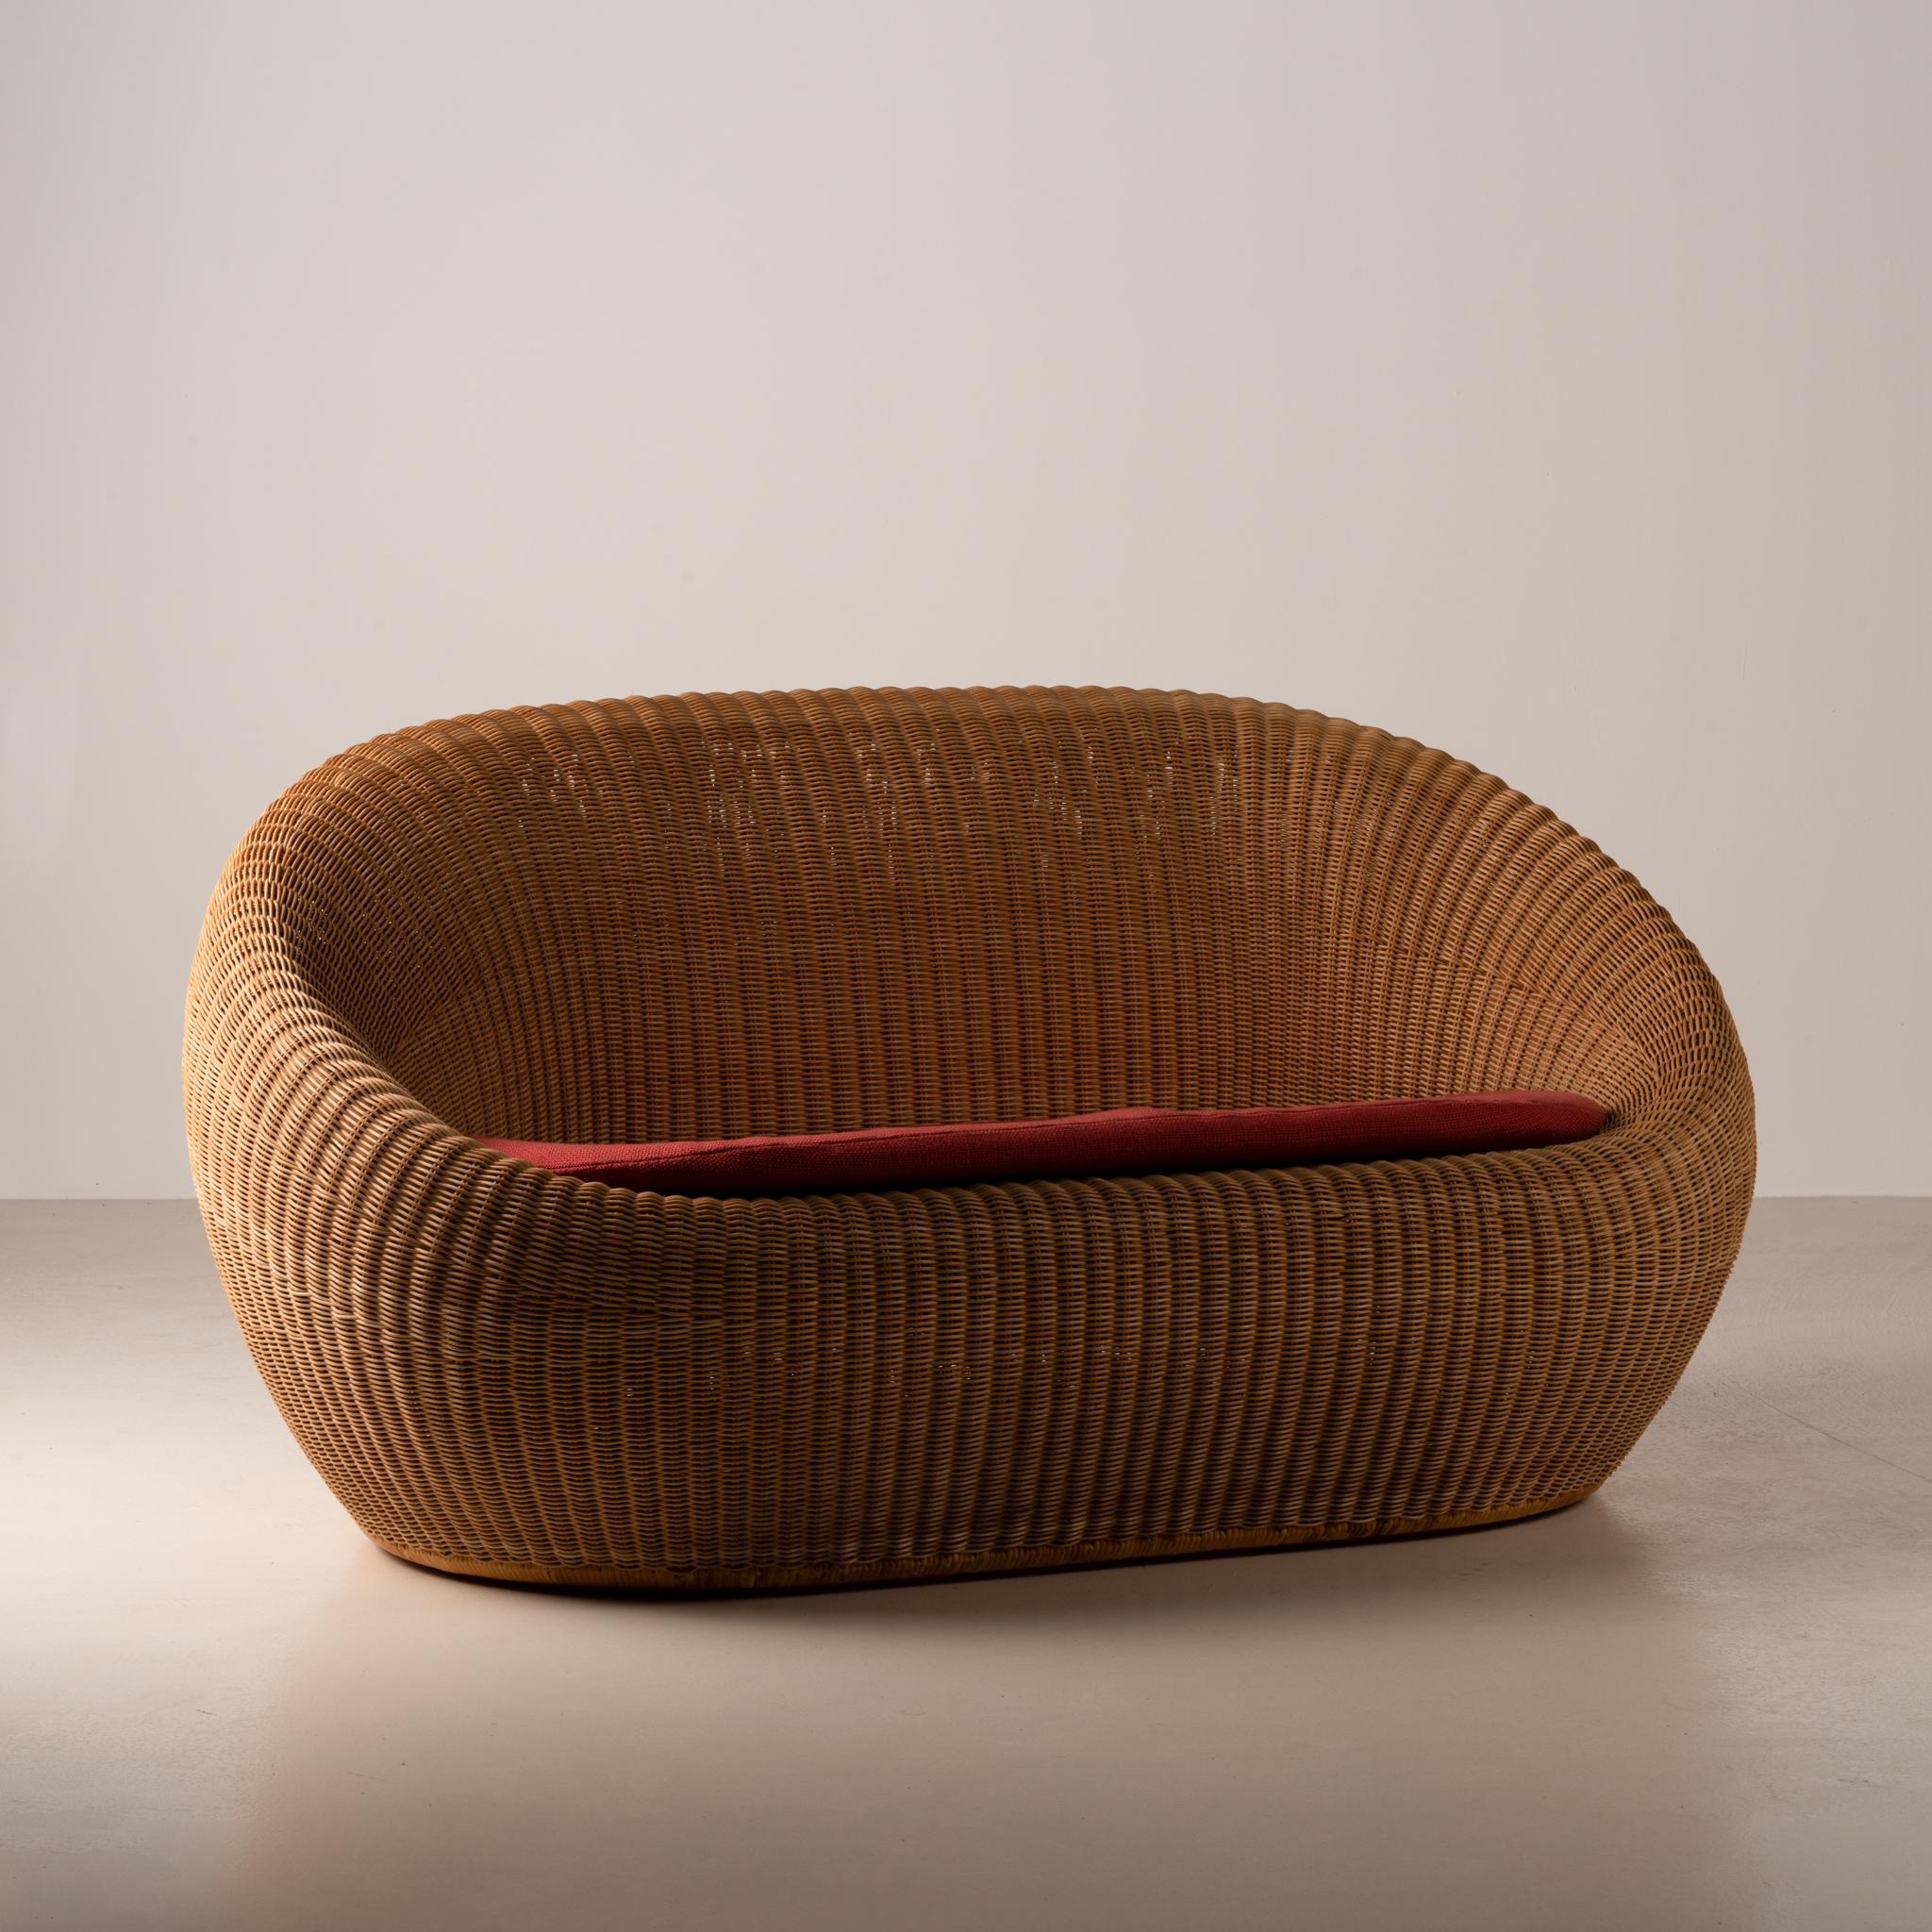 Ce canapé en rotin a été conçu  par Isamu Kenmochi  vers les années 1960. Il fait partie de l'emblématique 